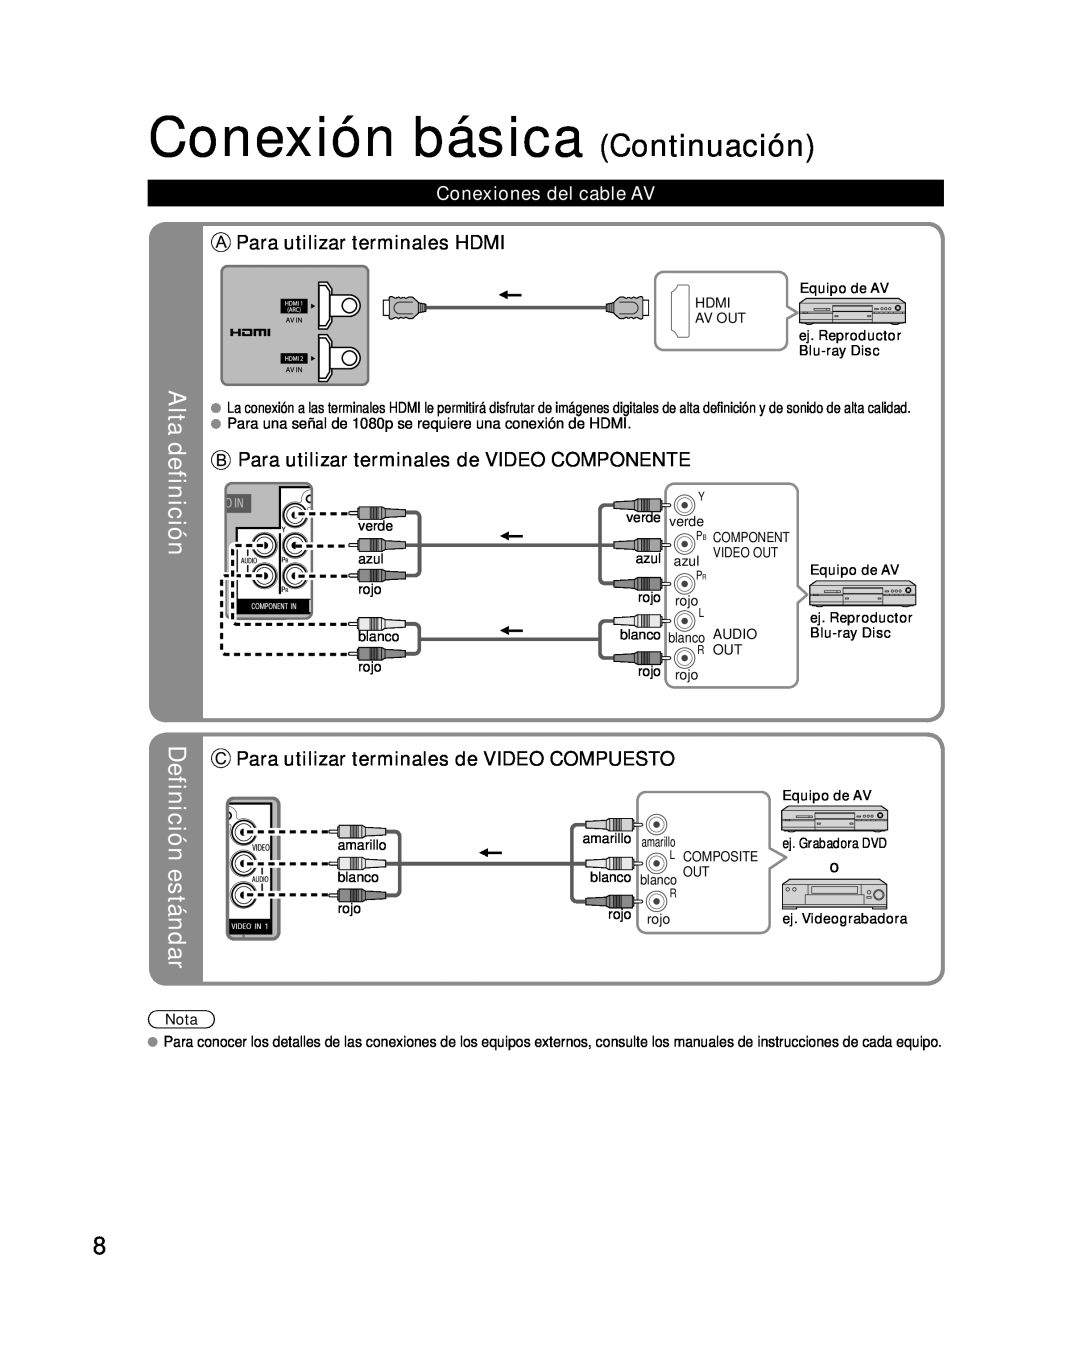 Panasonic TQB2AA0580 Conexión básica Continuación, Alta definición, Definición estándar, Para utilizar terminales HDMI 